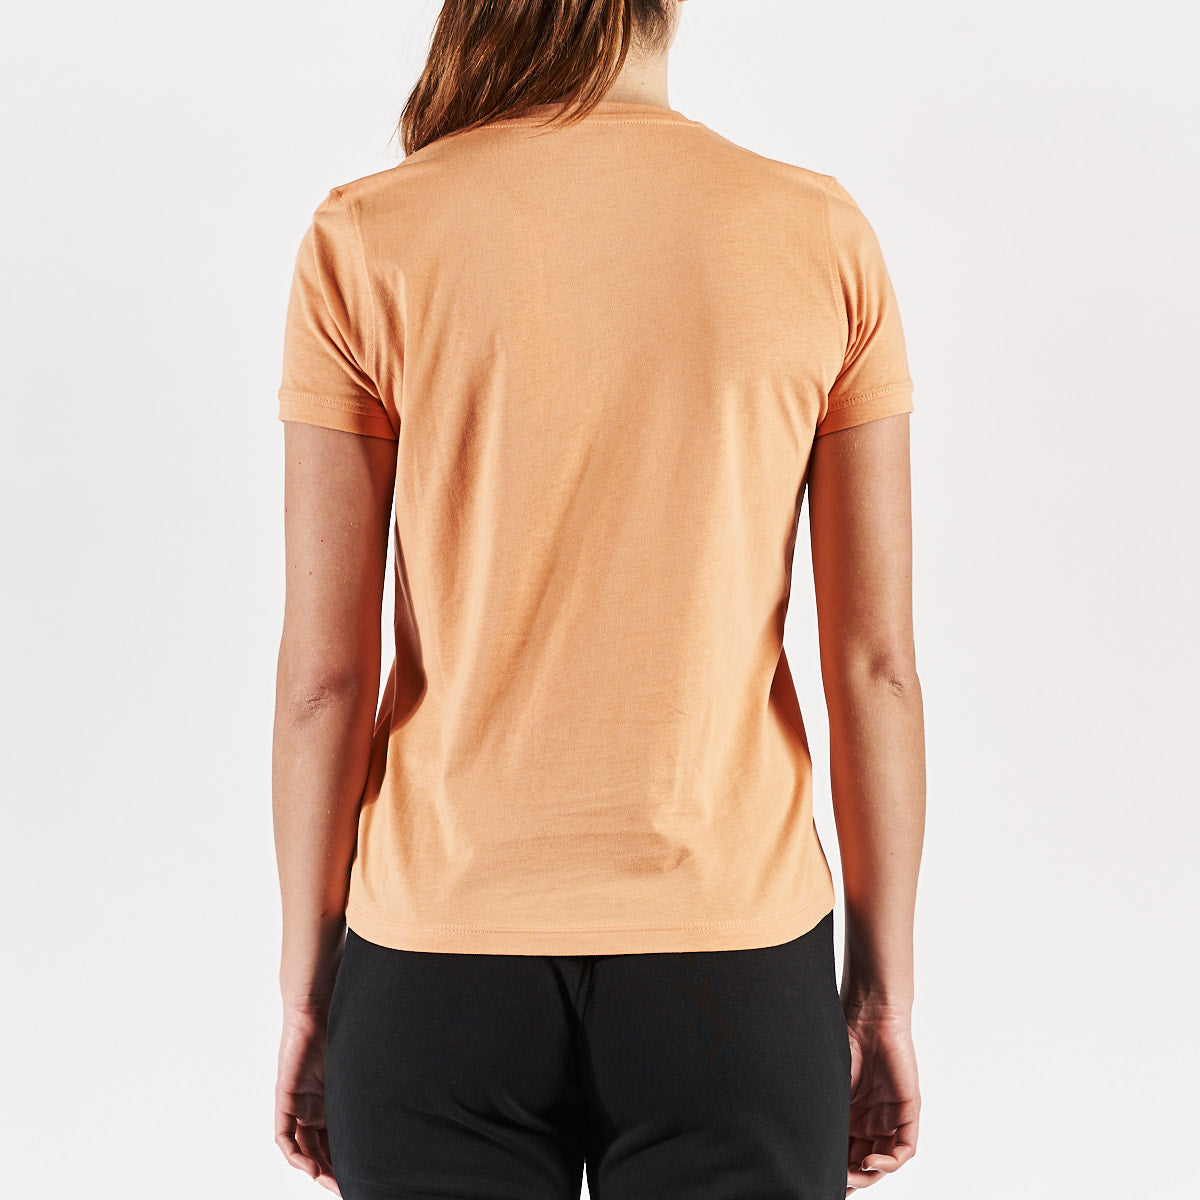 Camiseta Naranja Cabou Mujer - imagen 3